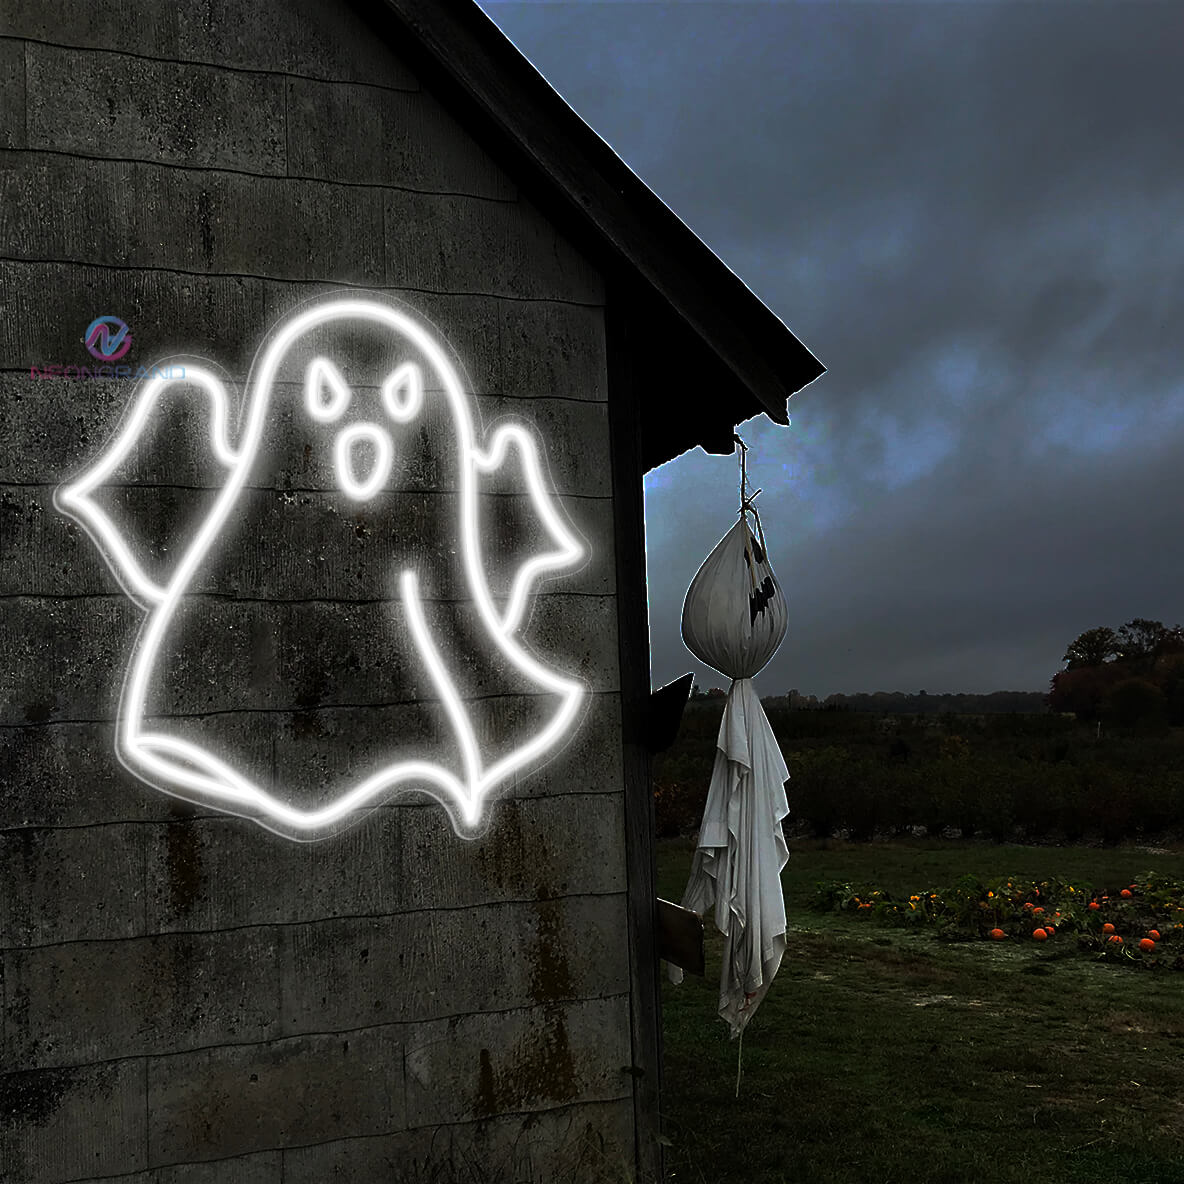 Ghost Neon Sign Halloween Led Light white